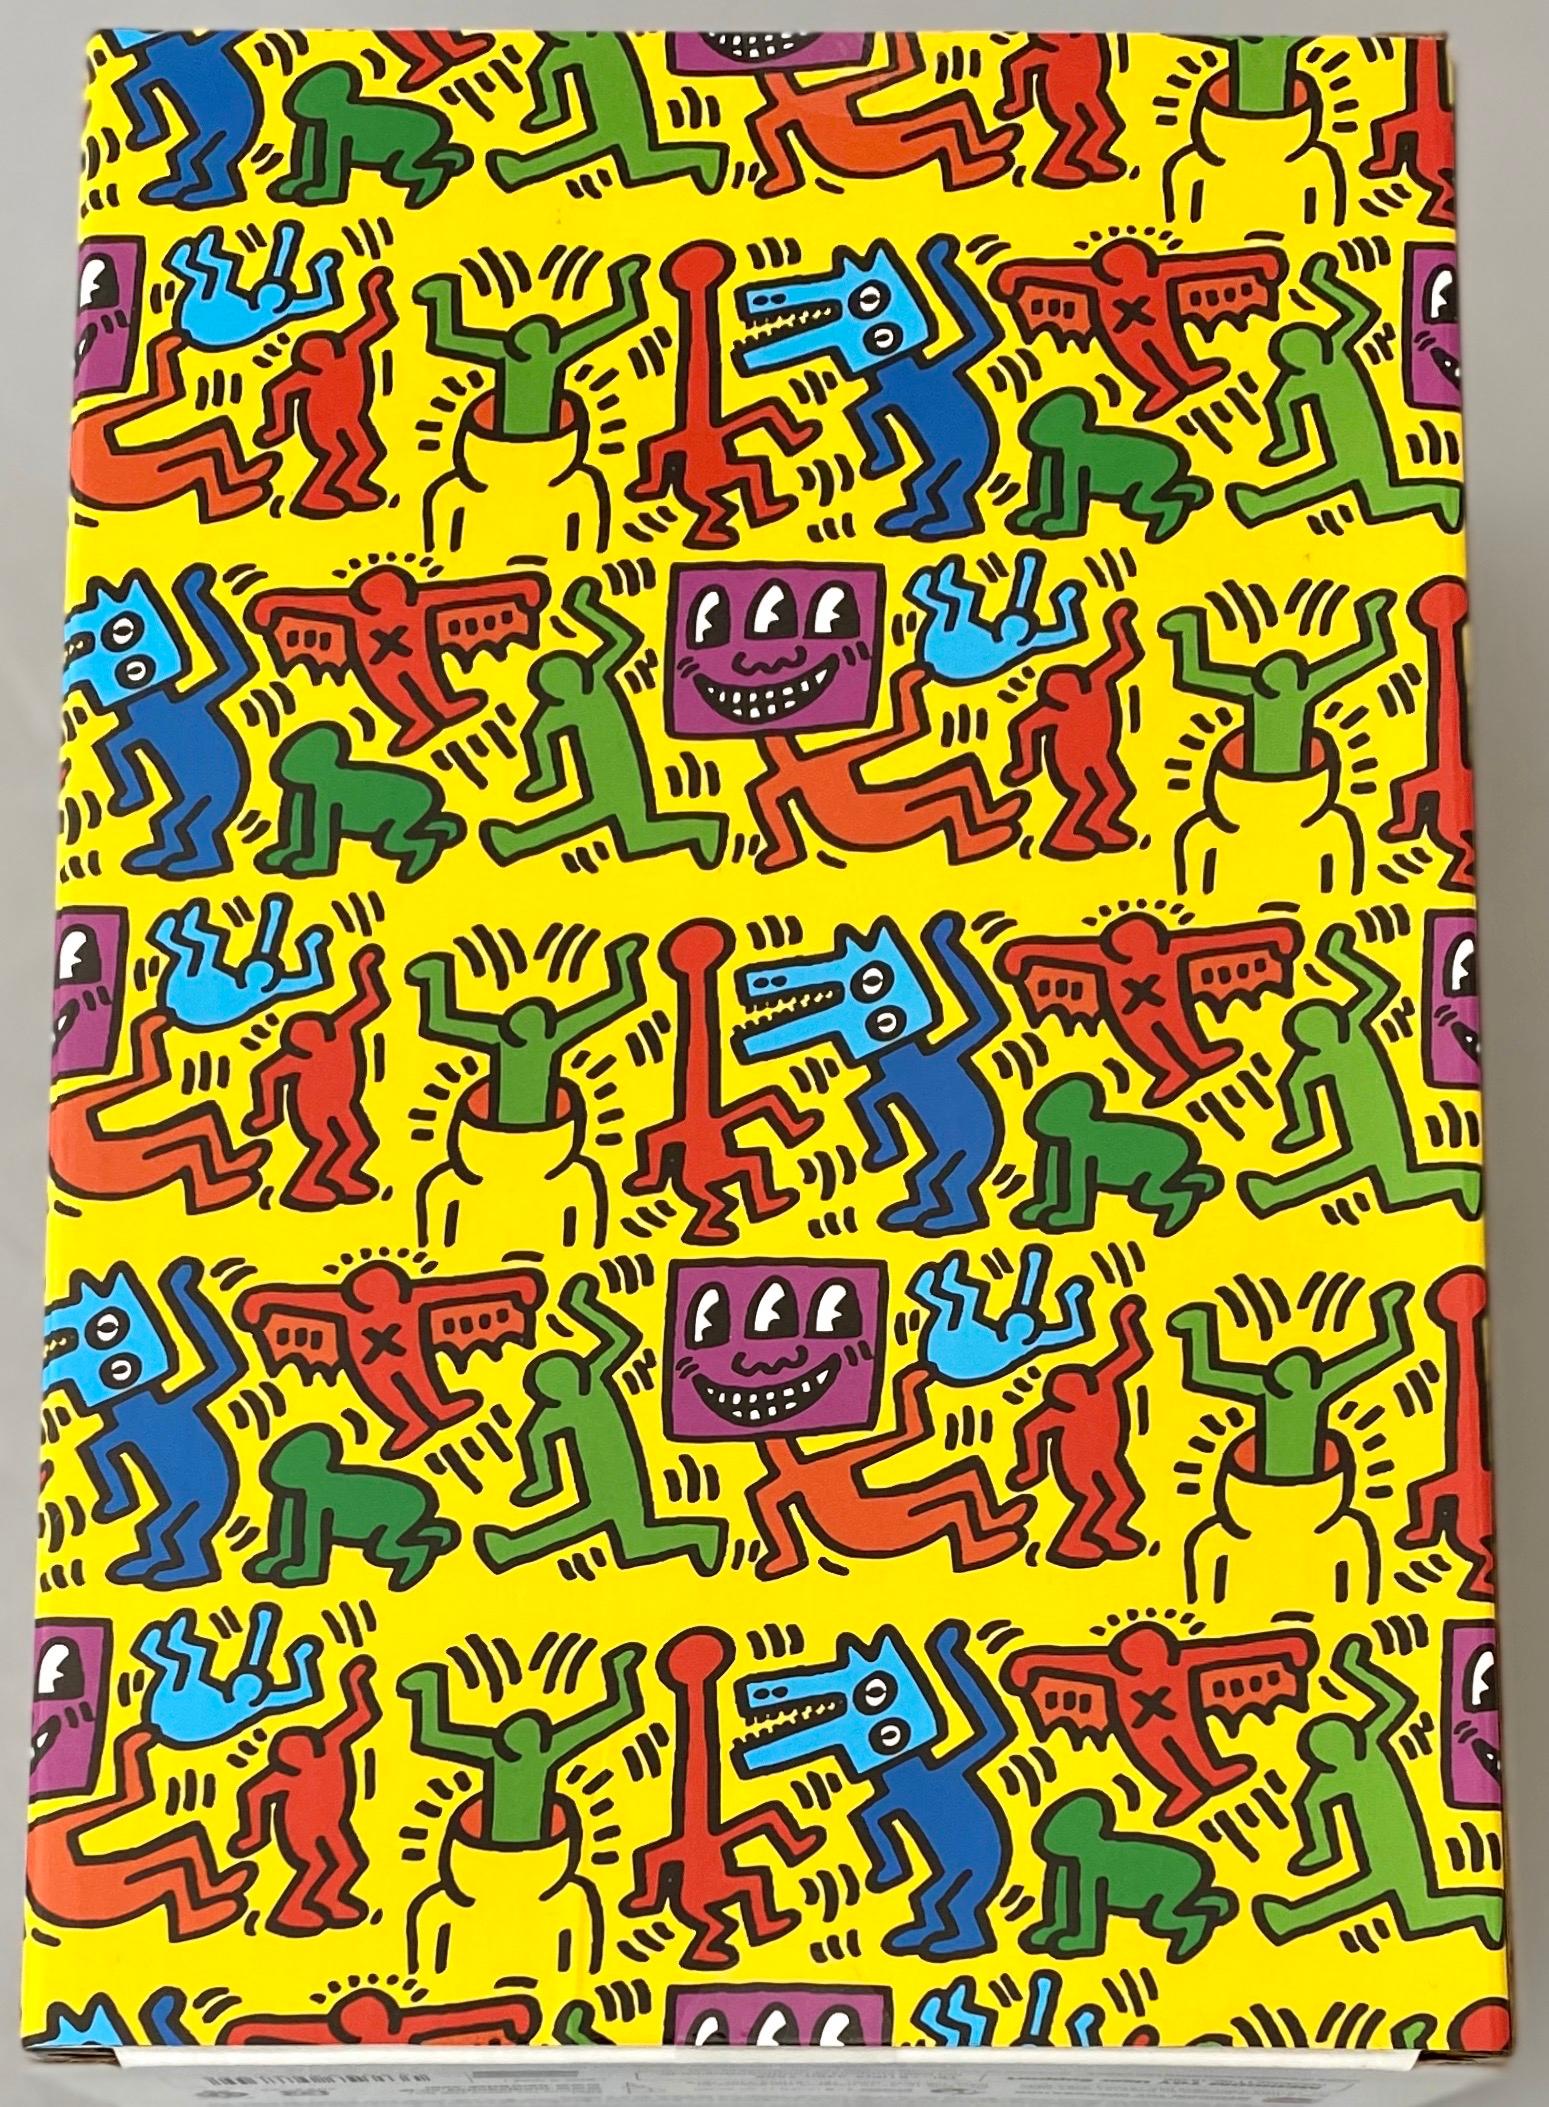 Keith Haring Bearbrick Vinyl Figuren: Satz von zwei (400% & 100%):
Ein einzigartiges, zeitloses Sammlerstück, geschützt und lizenziert durch den Nachlass von Keith Haring. Das Sammlerstück zeigt das Kunstwerk des verstorbenen Kultkünstlers aus der